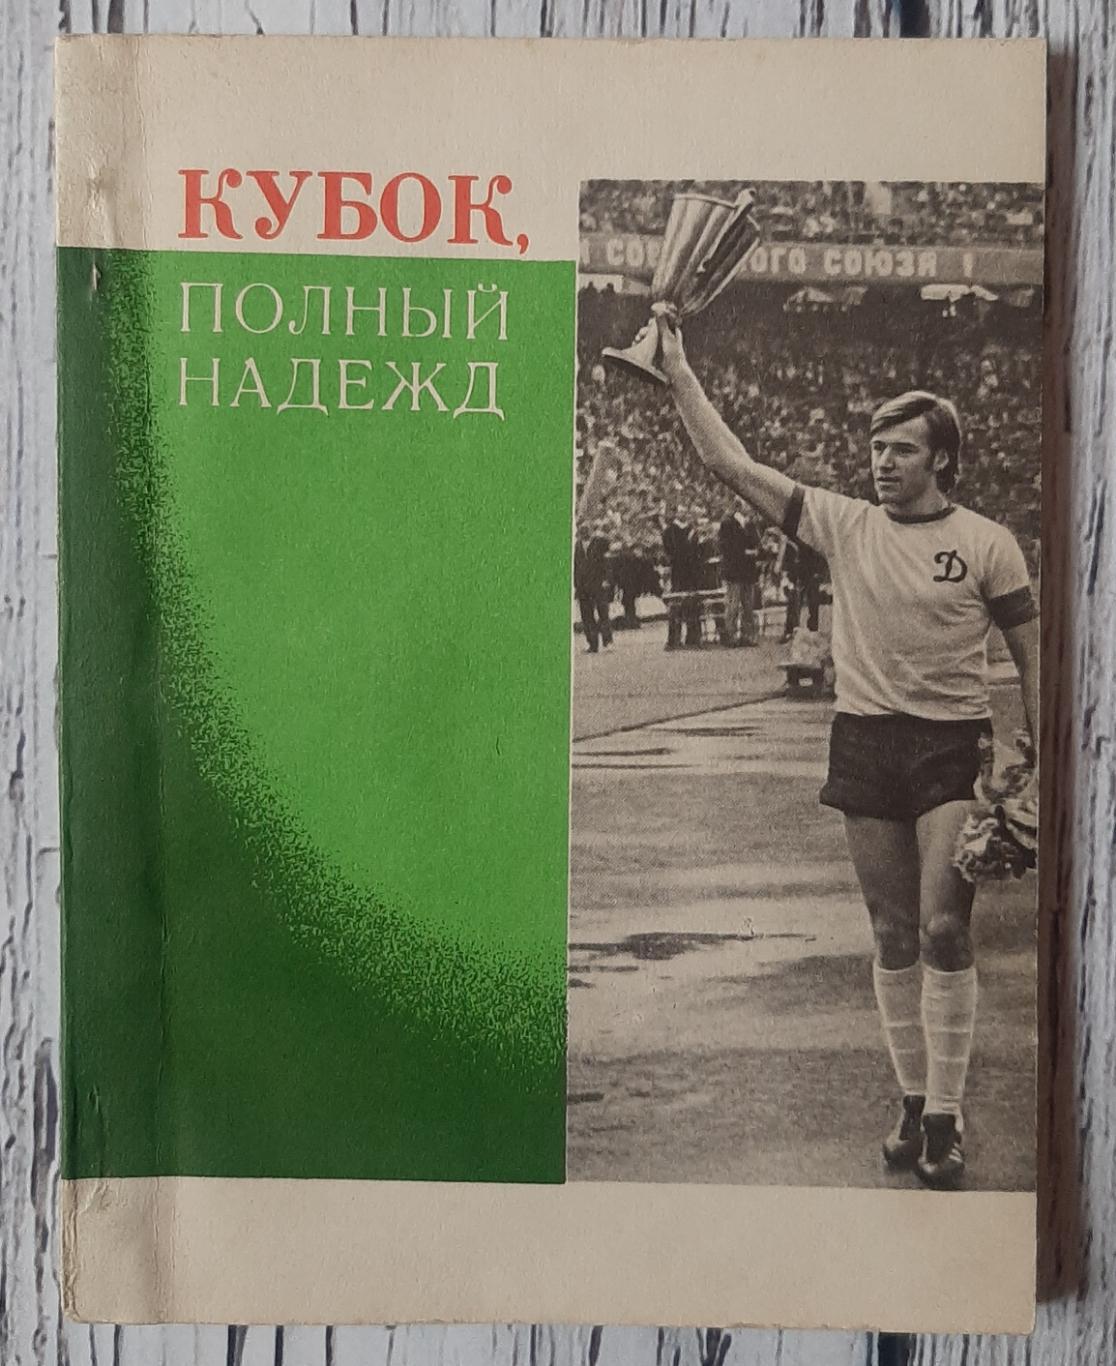 Черкасский - Кубок, полный надежд. Київ. 1975